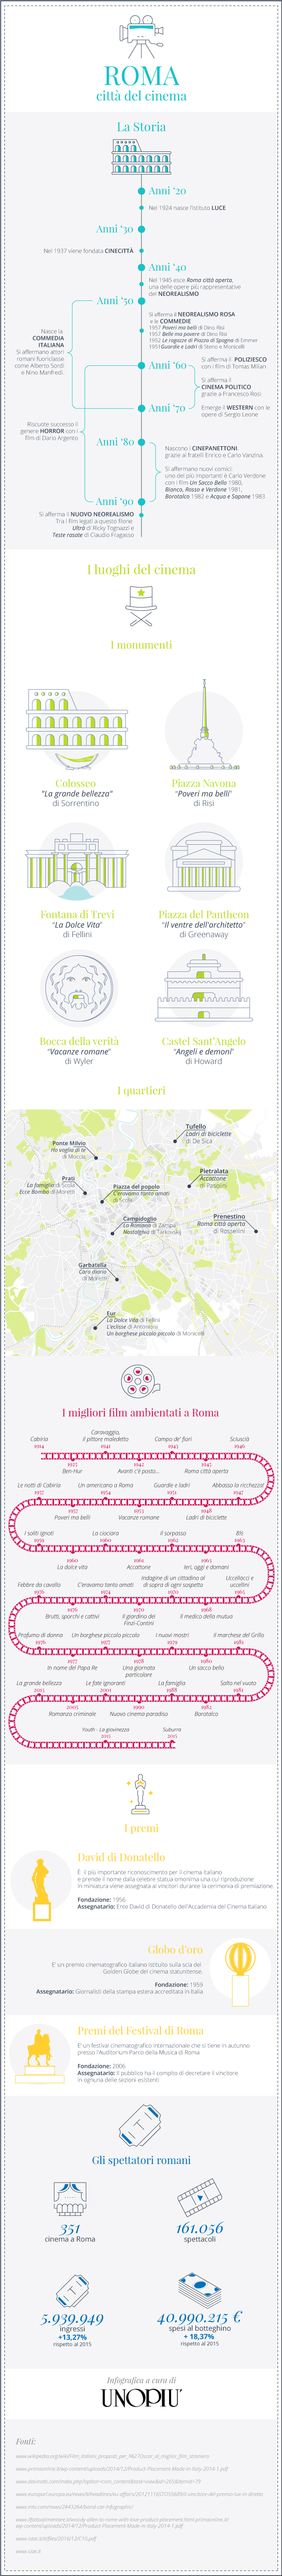 film roma (1)